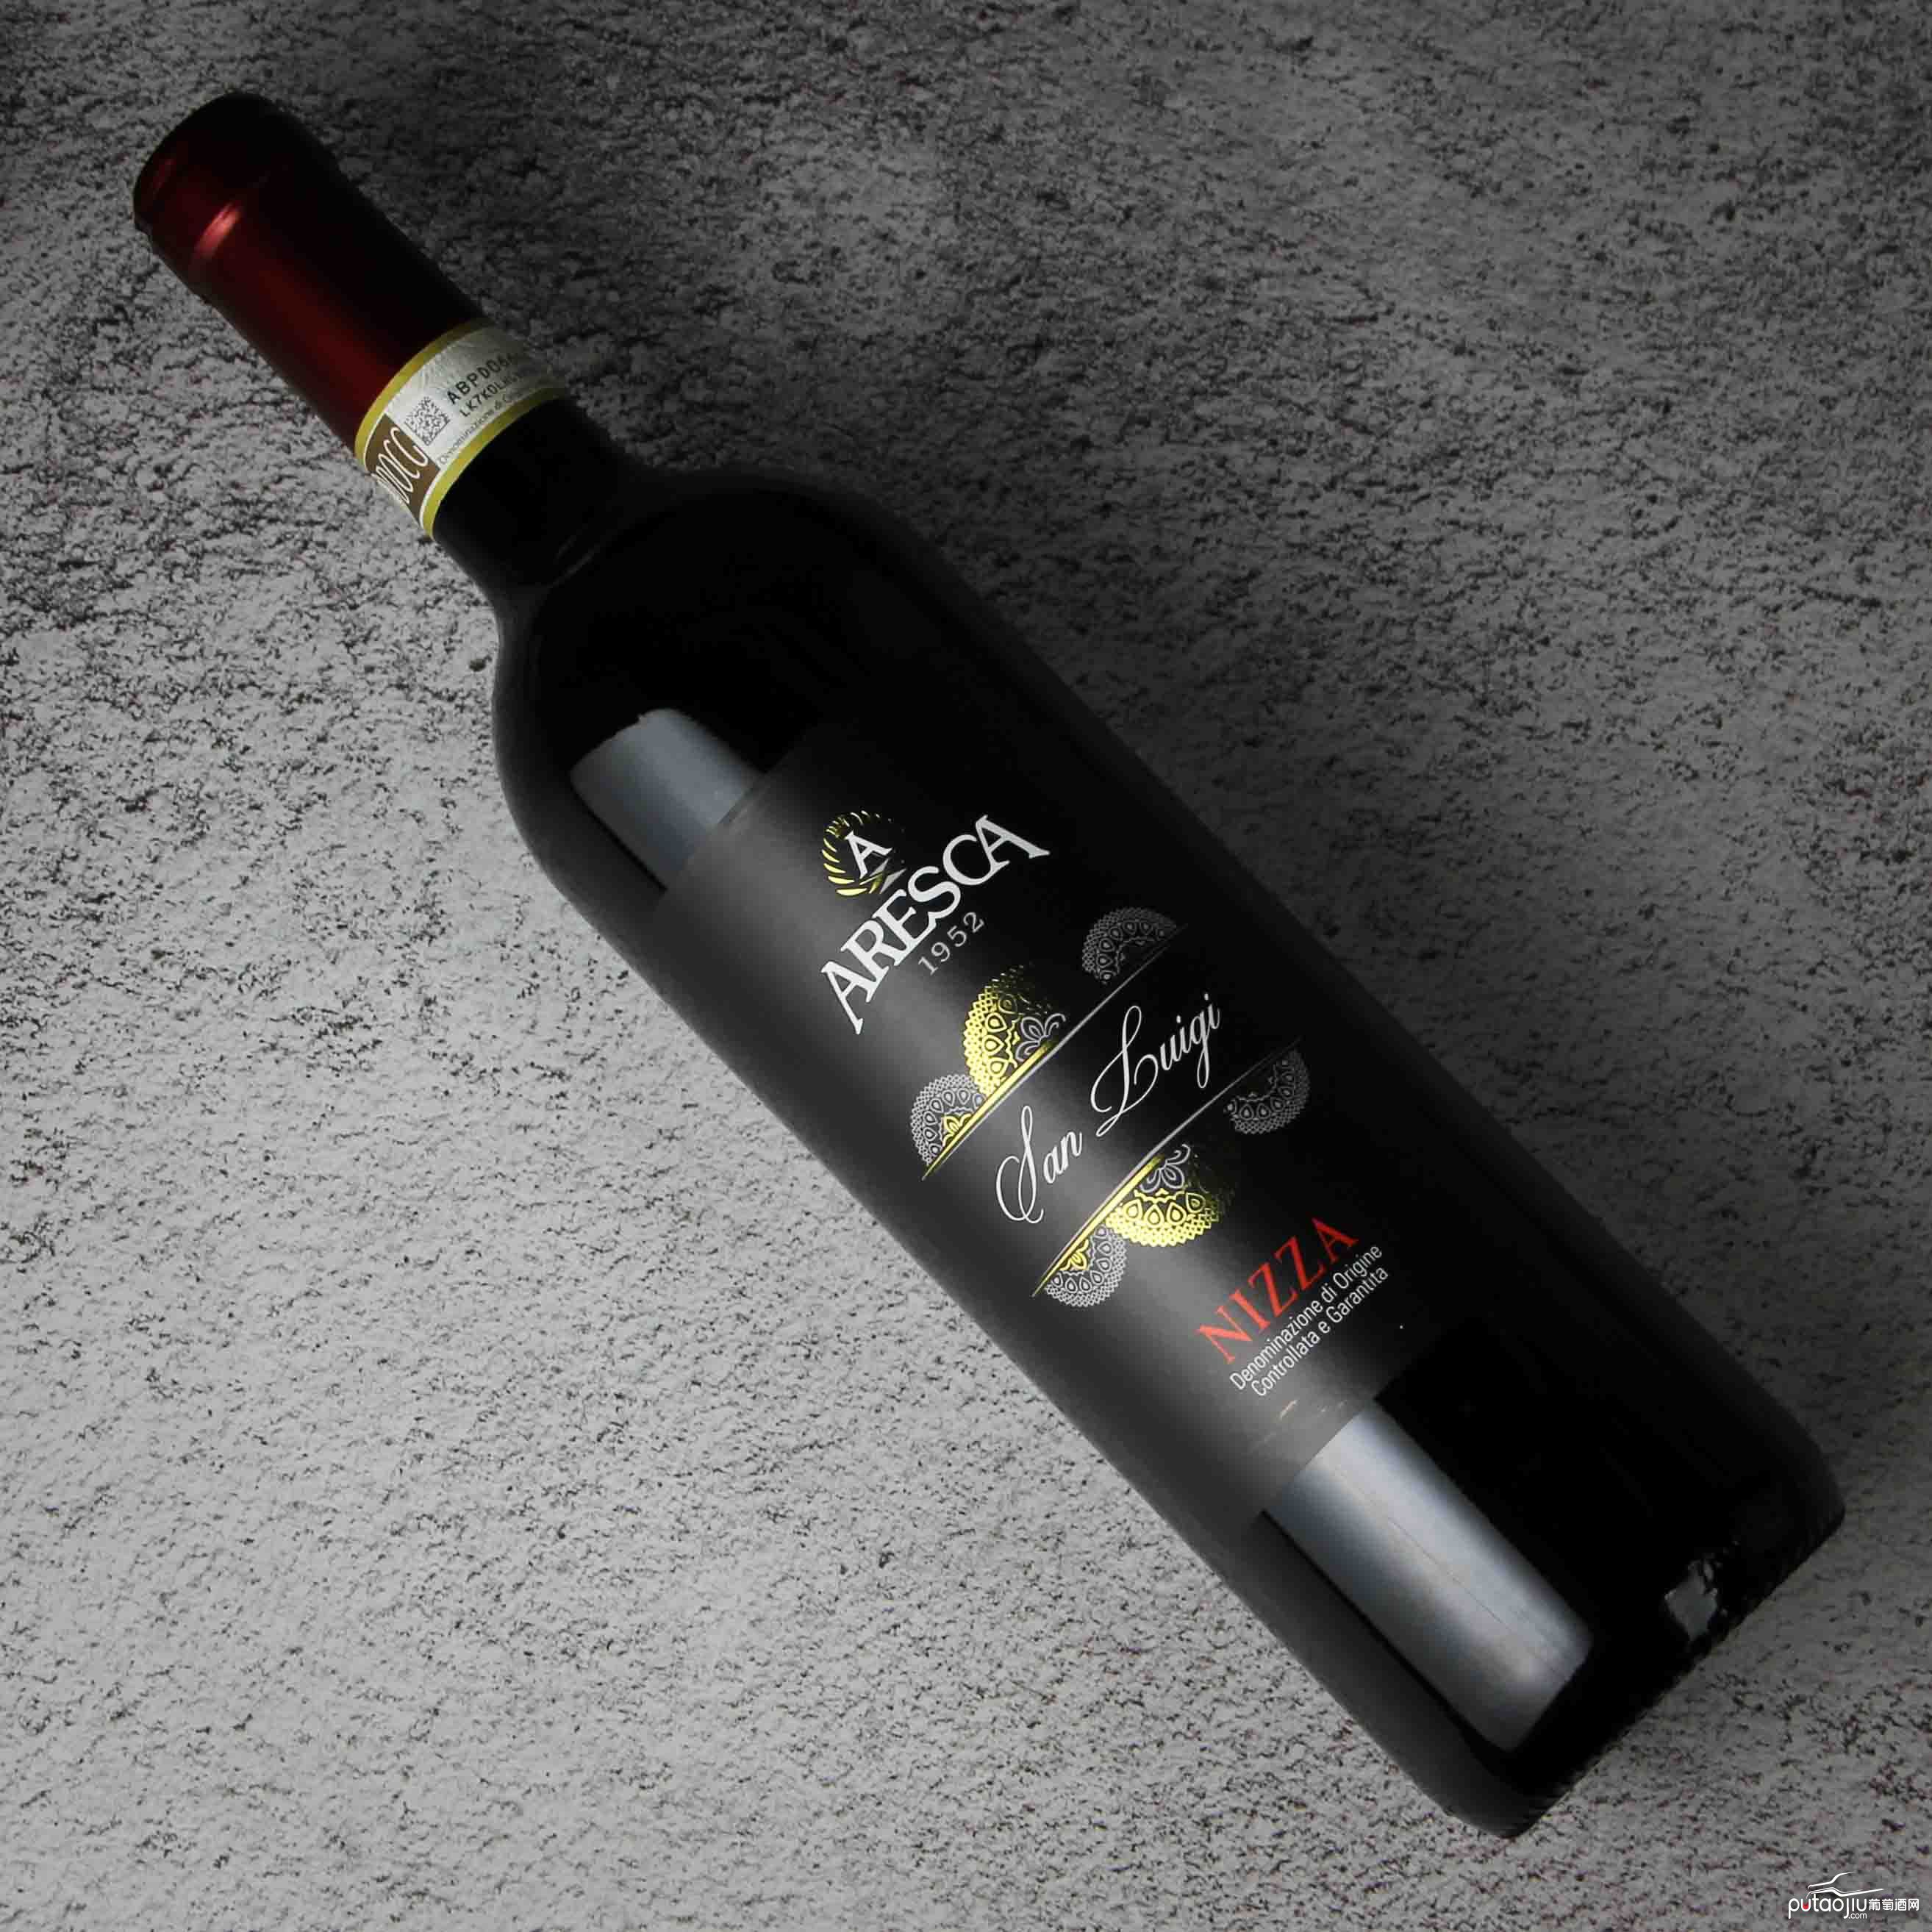 意大利皮埃蒙特ARESCA酒庄尼扎·圣路易吉红葡萄酒红酒